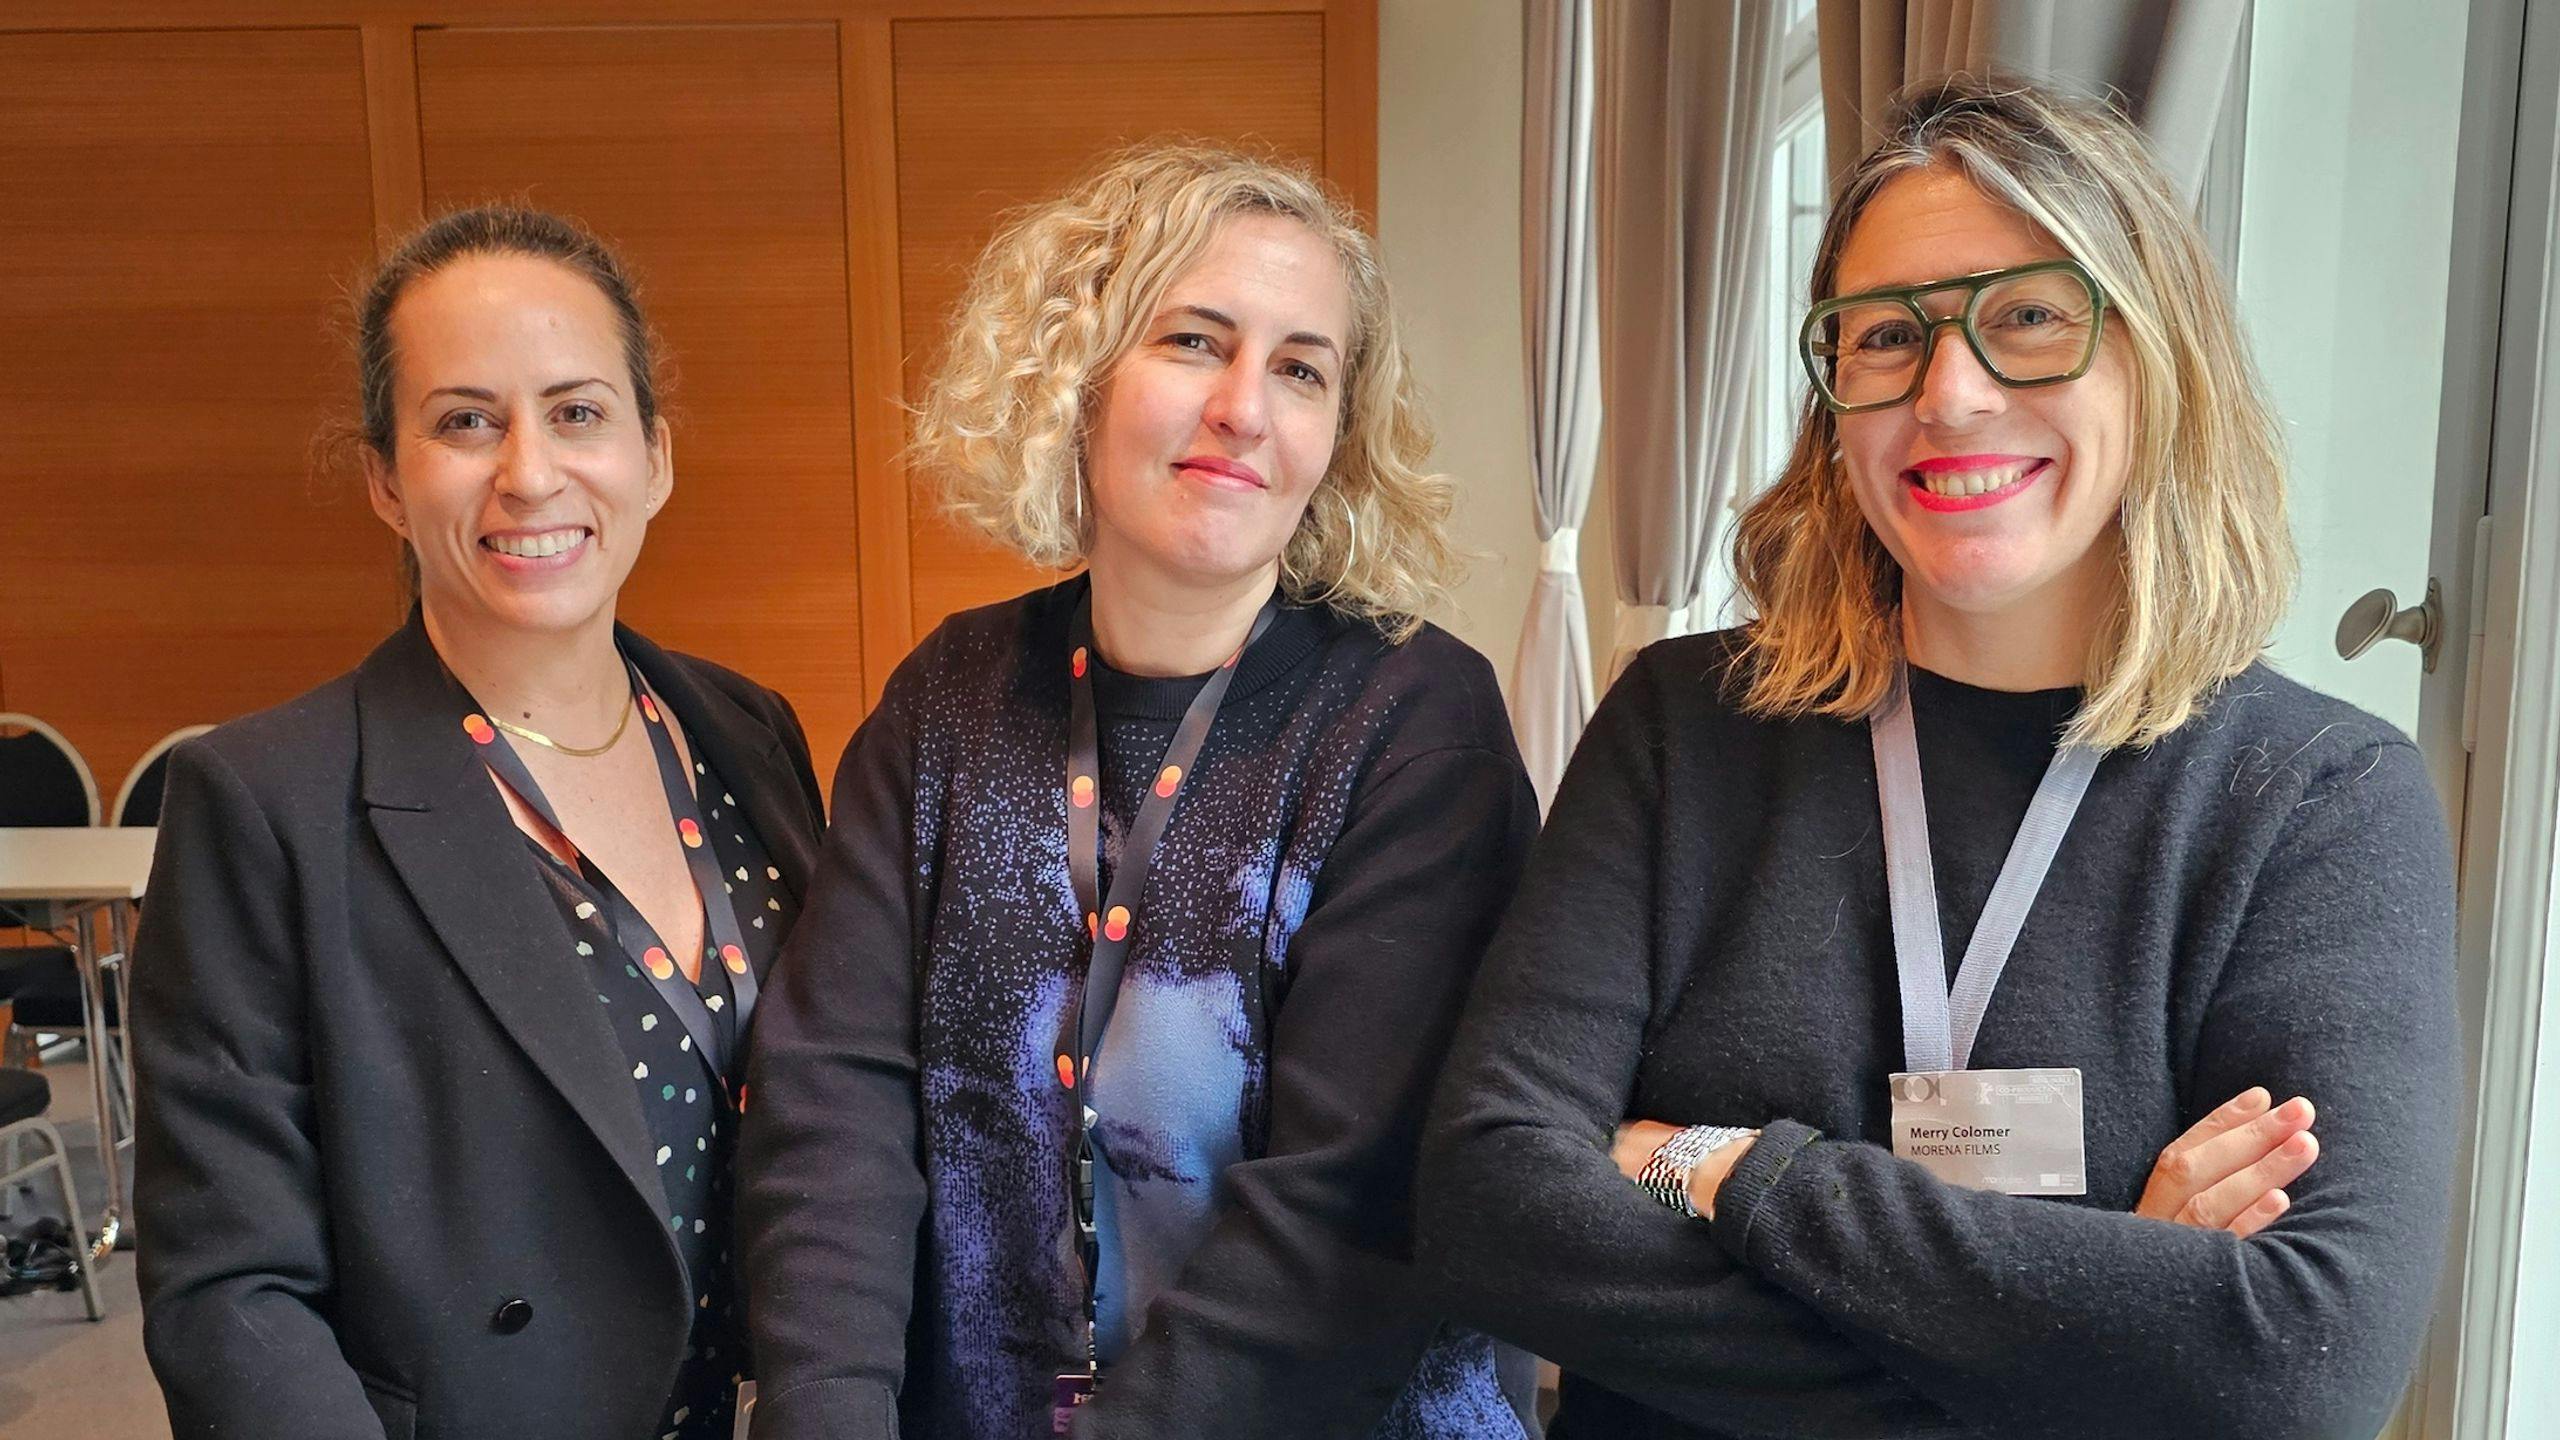 La directora Carlota Pereda, junto a las productoras Laura Abril y Merry Colomer, en la sede del Co-Pro Series de la Berlinale 2024